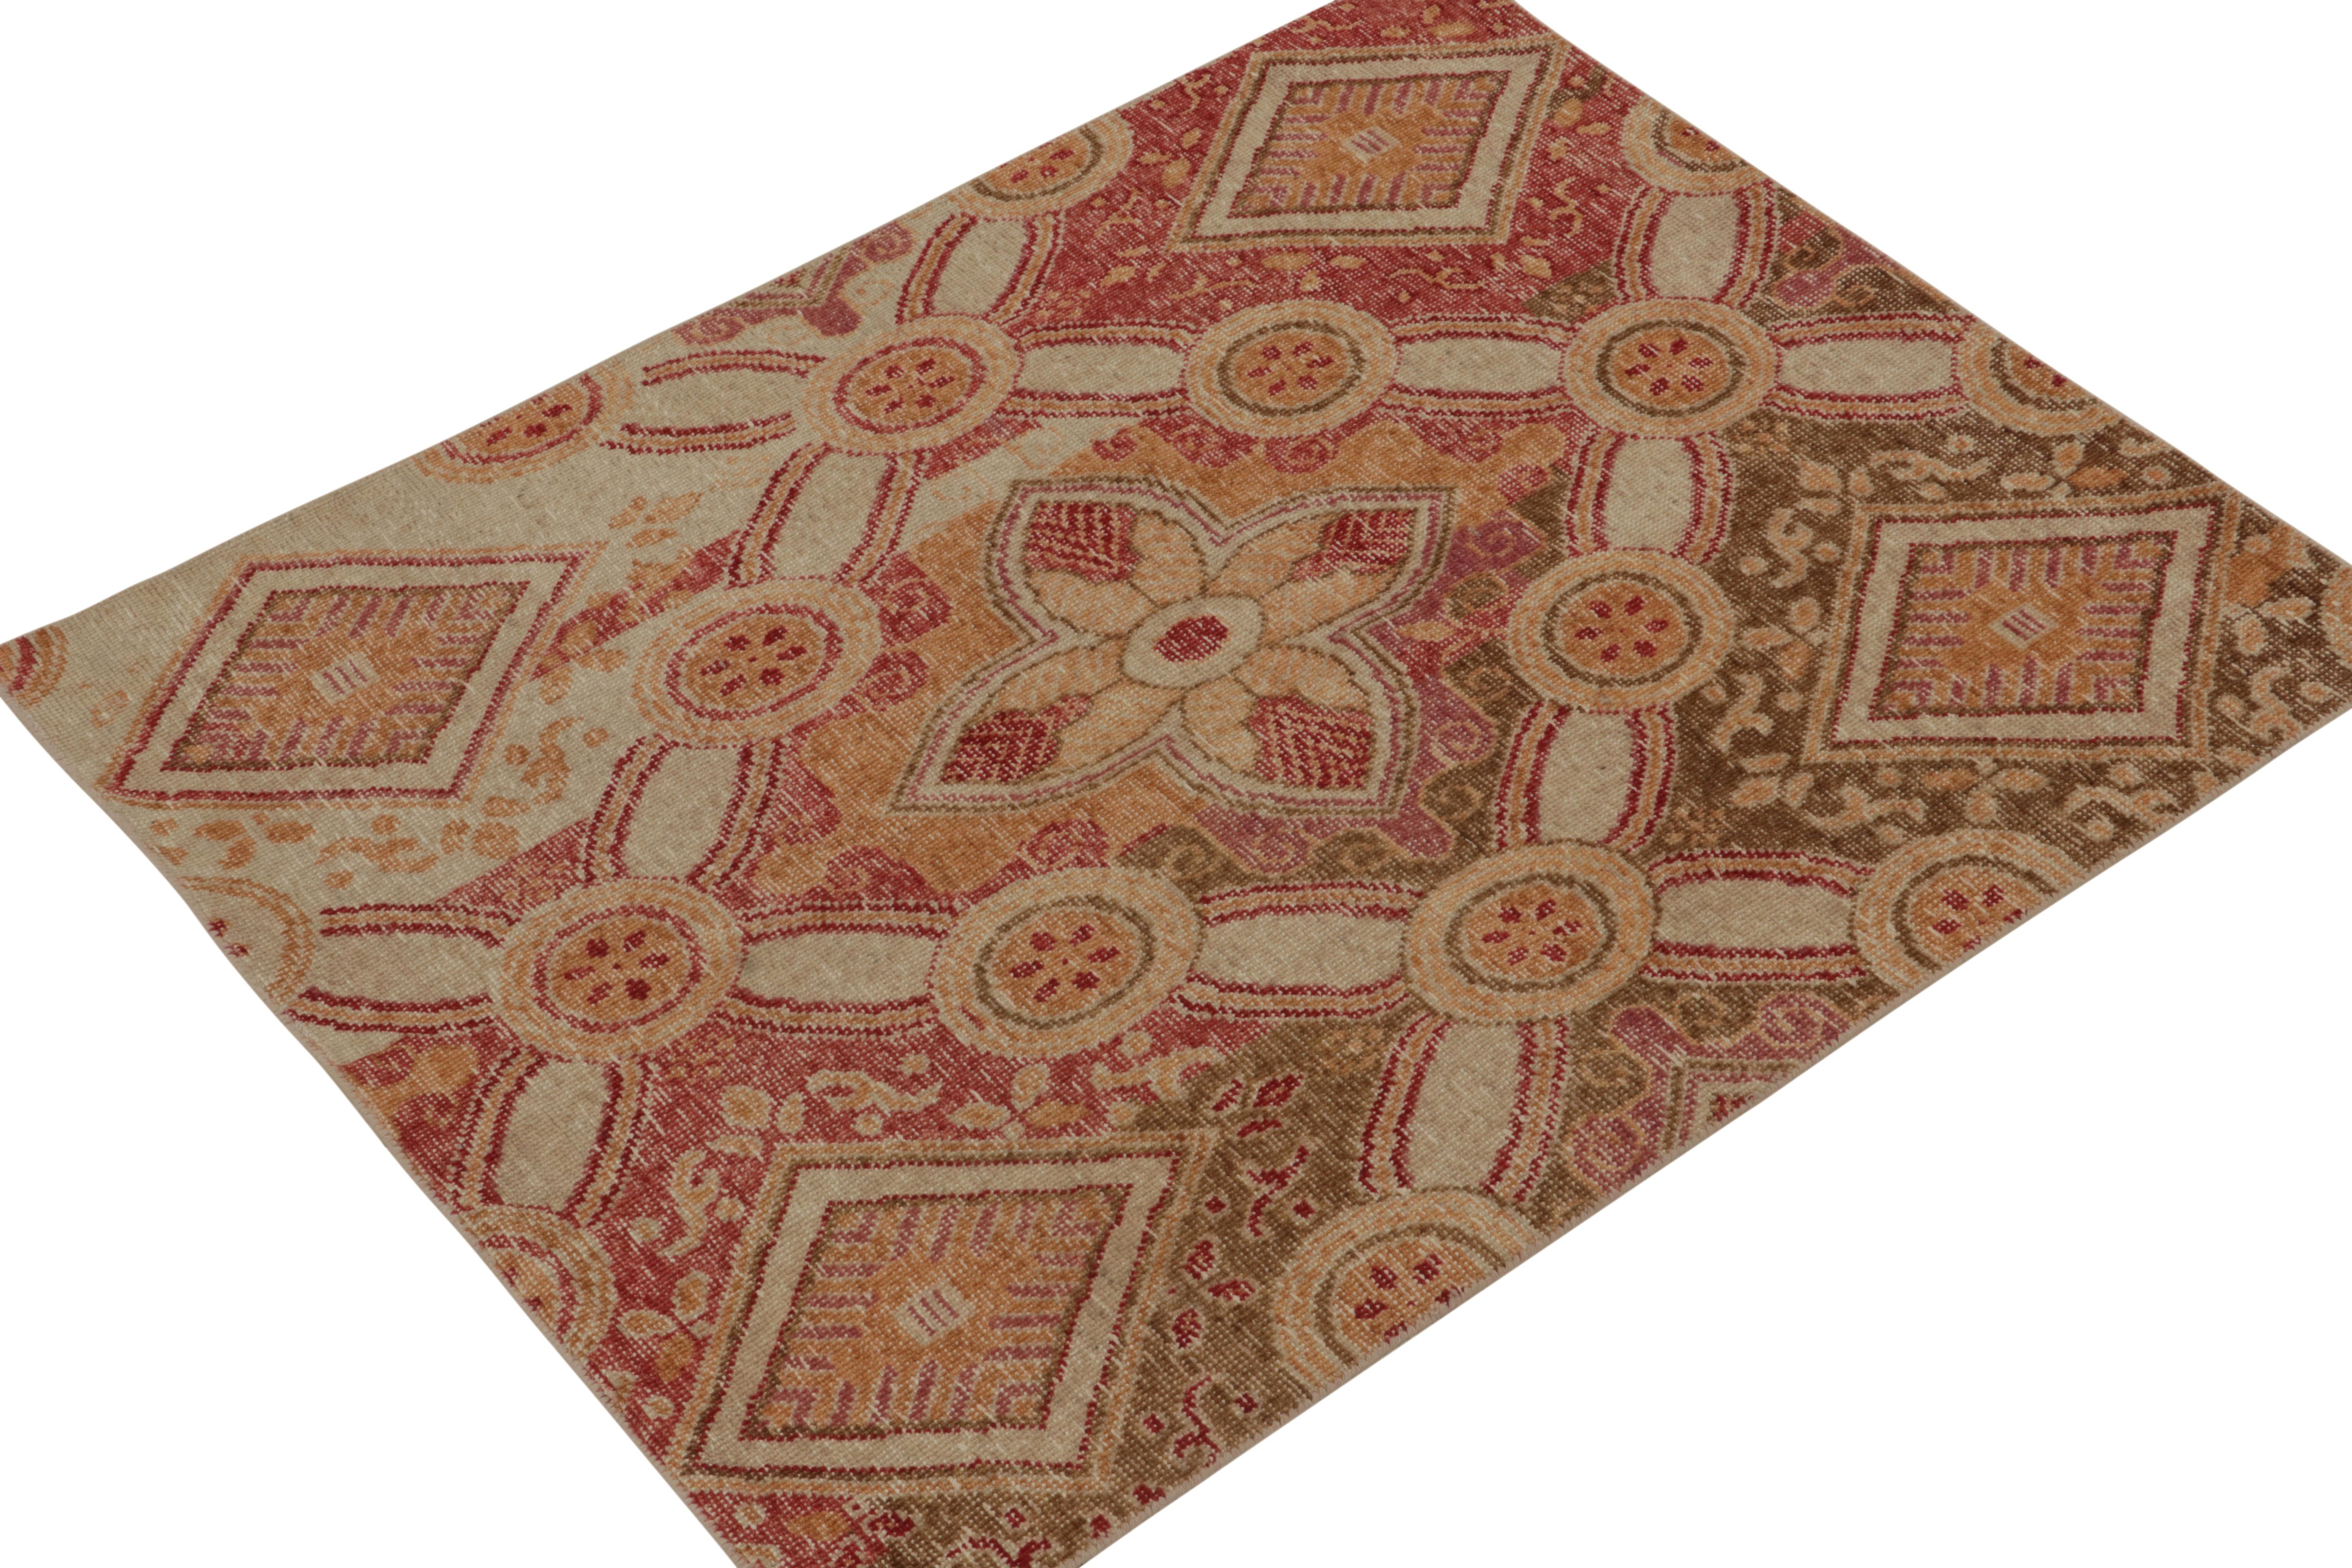 Issu de la Collection Homage de Rug & Kilim, ce tapis en laine nouée à la main de 4 x 5 cm s'inspire des sensibilités européennes les plus révérées. 

Sur le Design : 

La vision s'épanouit avec des motifs floraux en treillis dans les tons rouge,